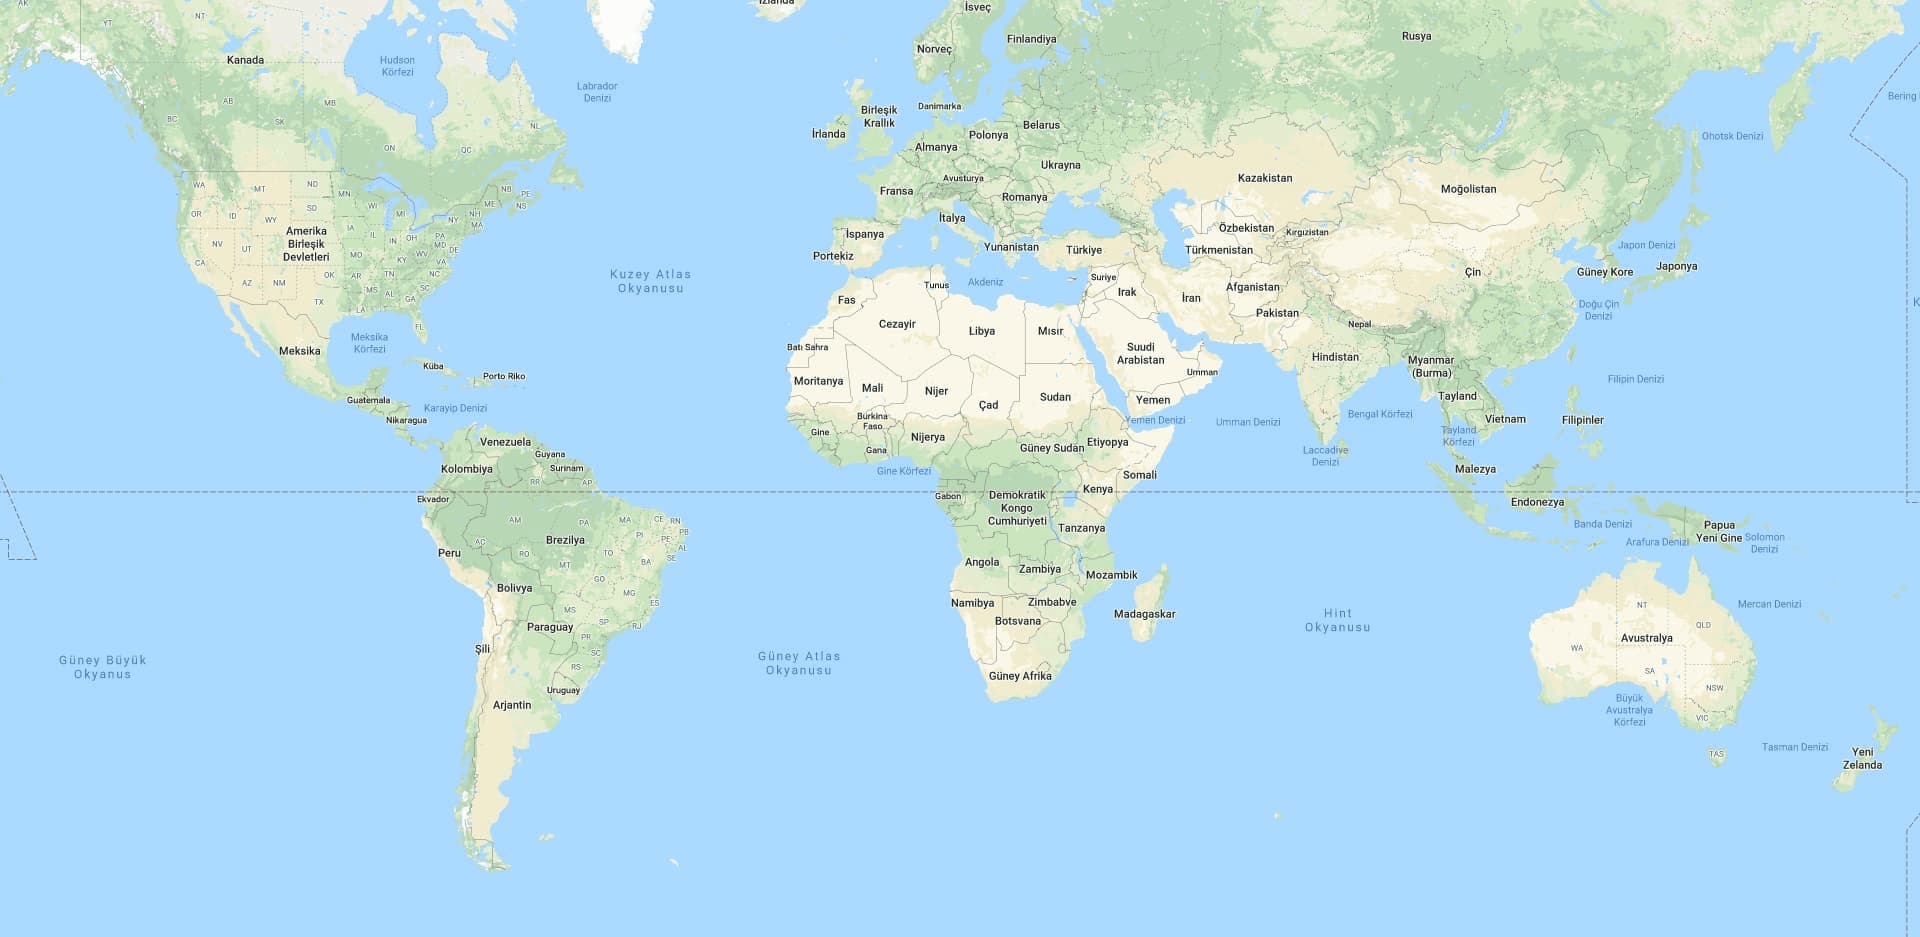 güney yarım kürede yer alan ülkeler hangileridir?